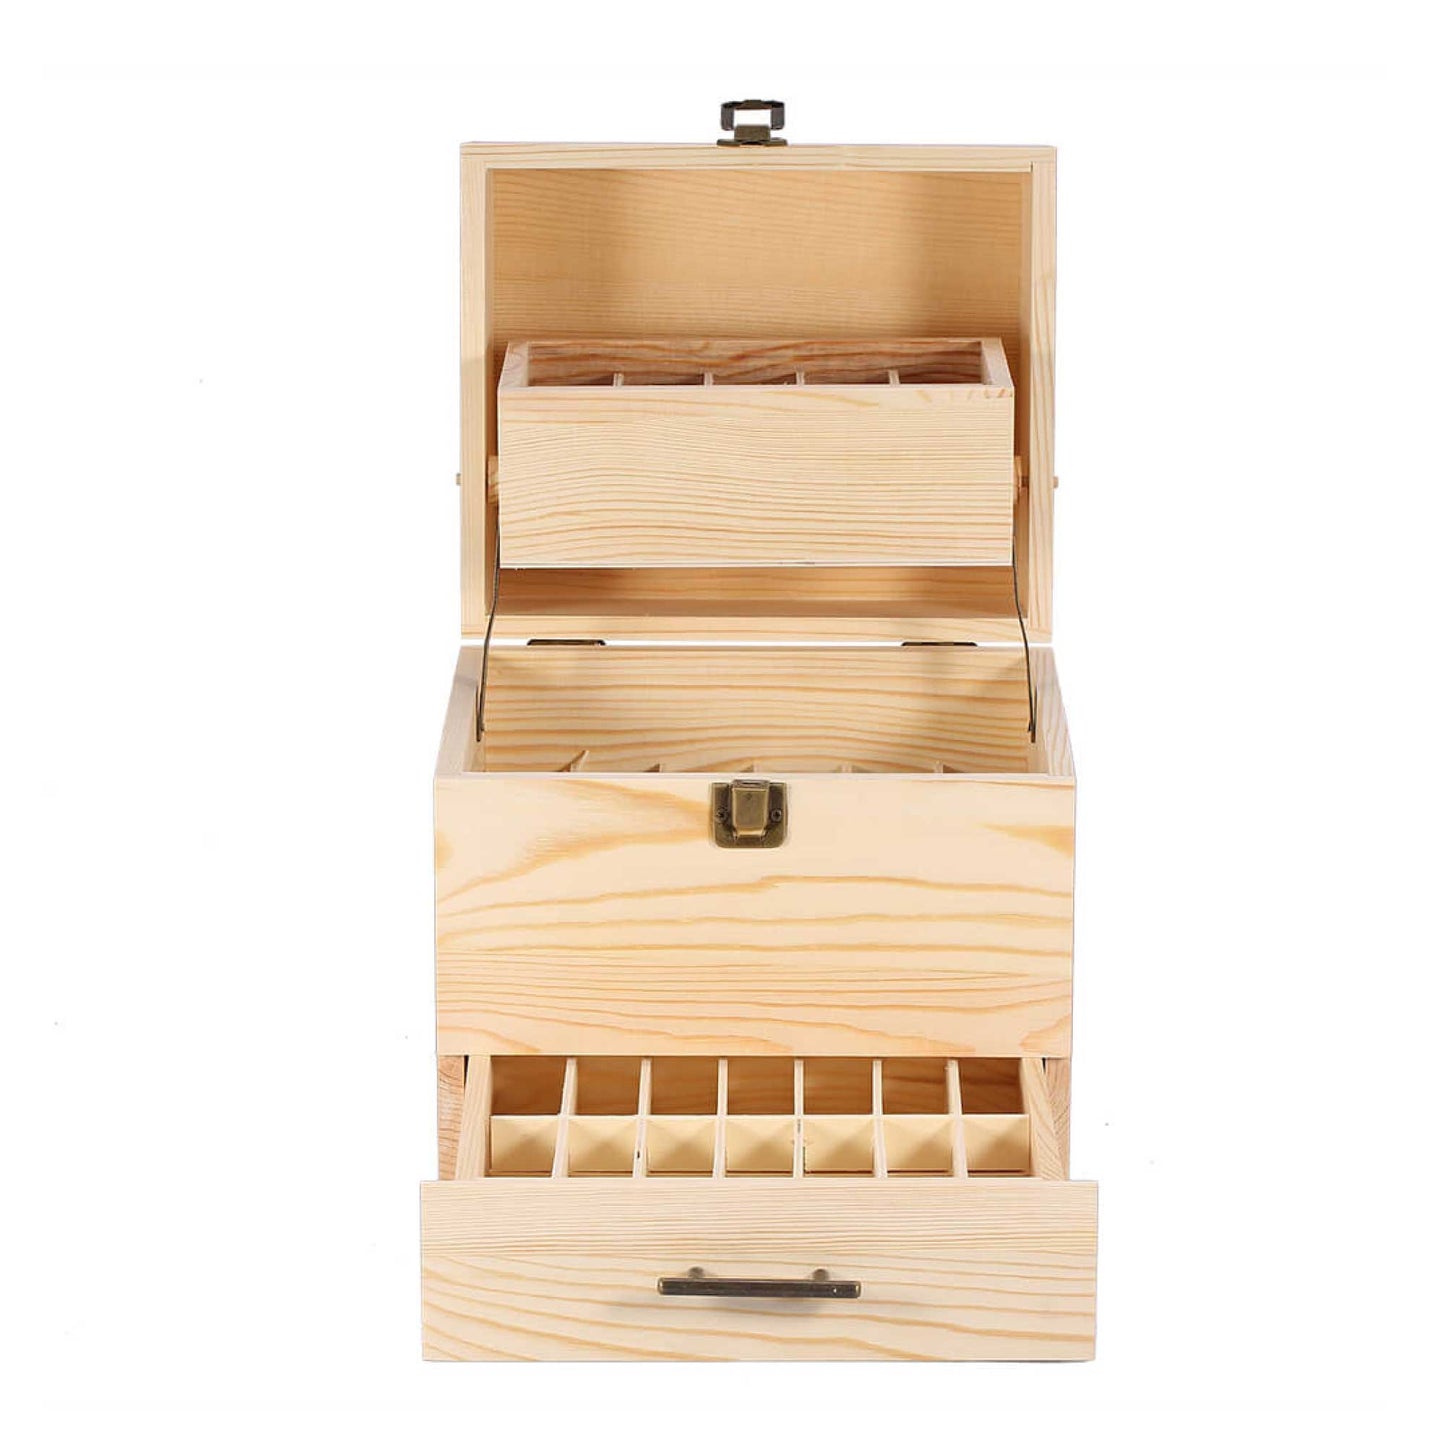 59 Slots Essential Oils Storage Box - Wooden 3-Tier Bottle Holder